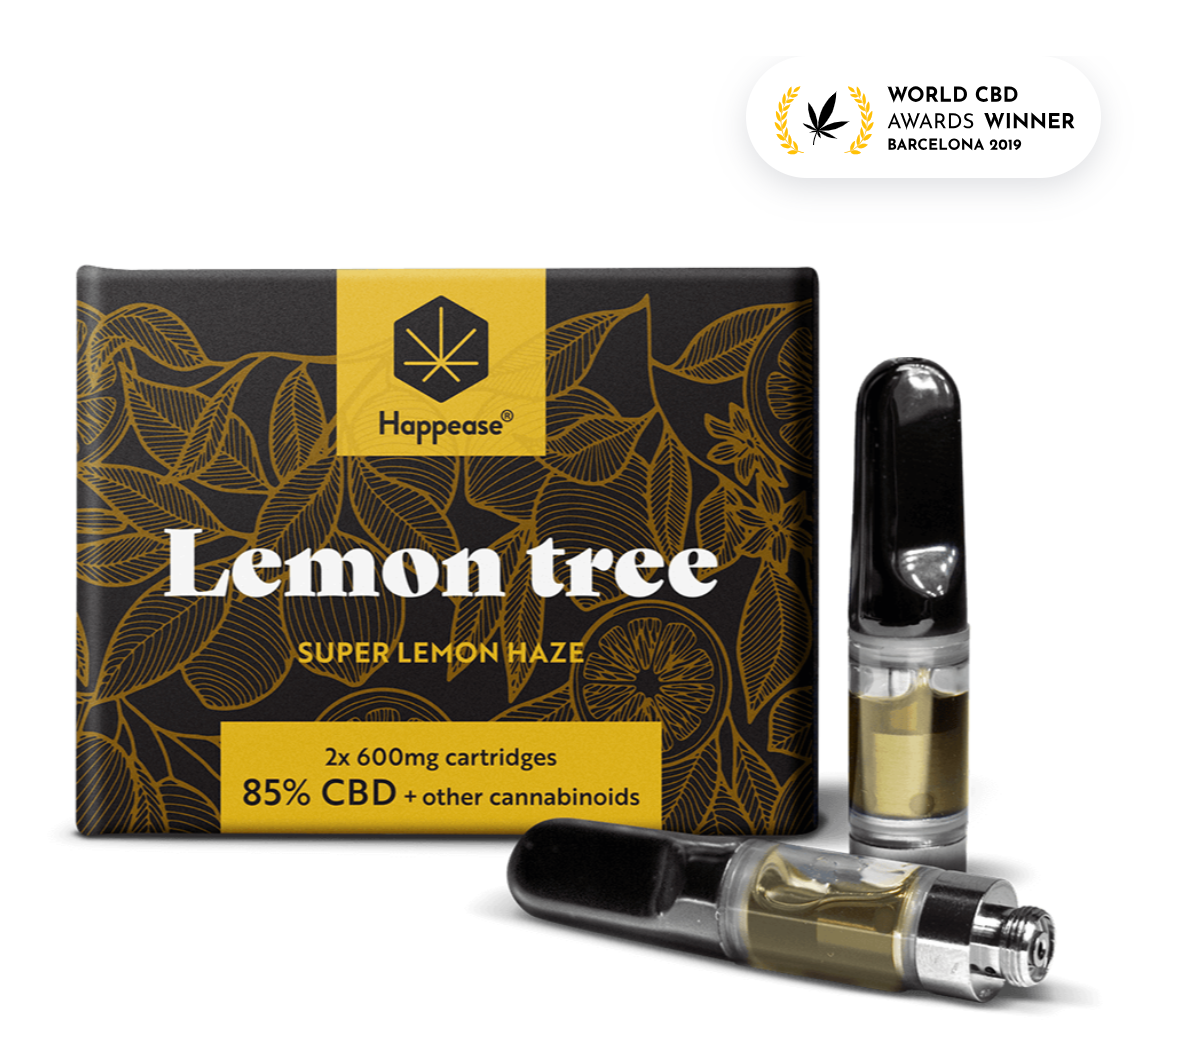 Happease Vape Pen "Refill" - 2X Lemon Tree "Super Lemon Haze" (85% CBD)